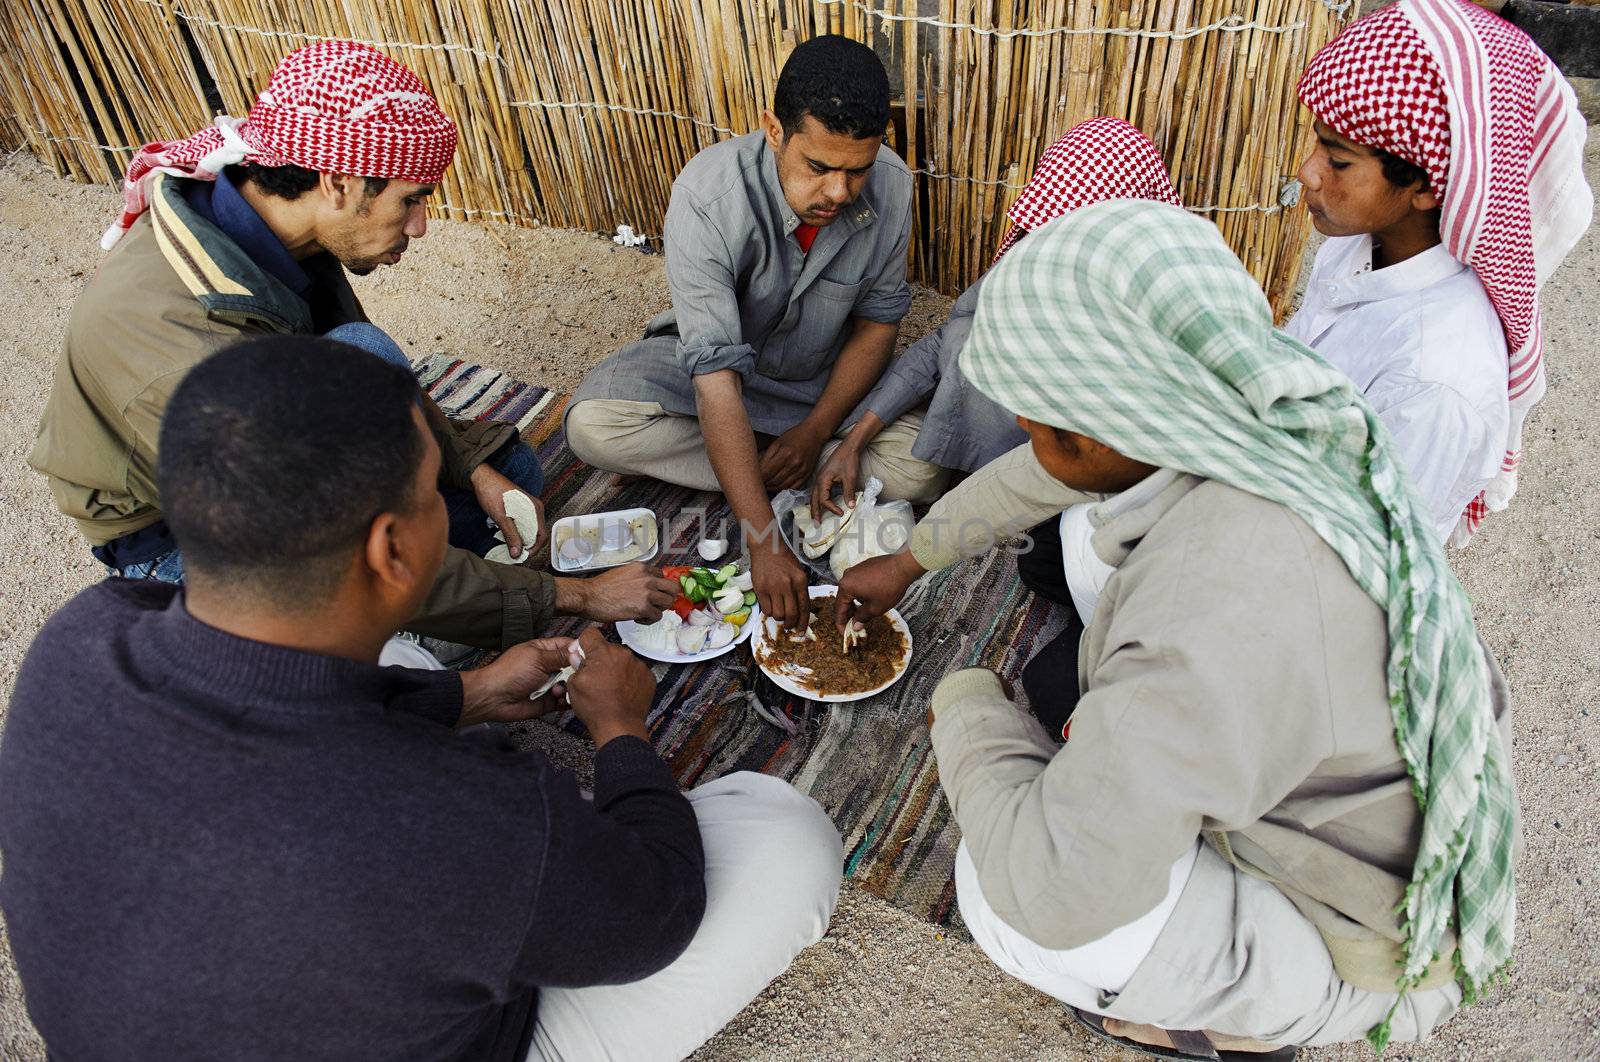 Bedouin men by jackq